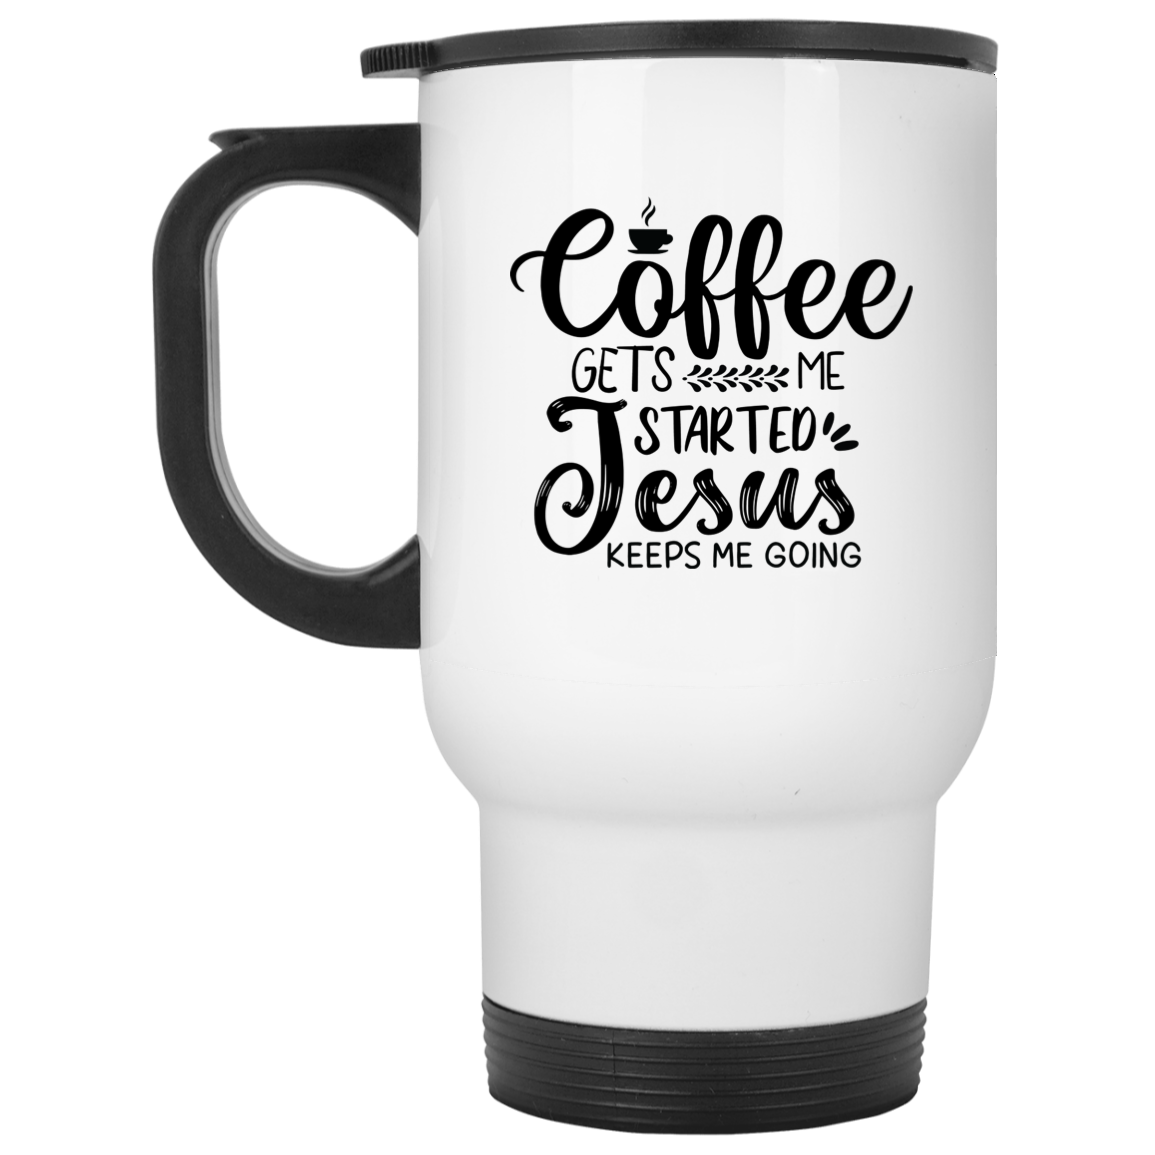 Coffee White Travel Mug